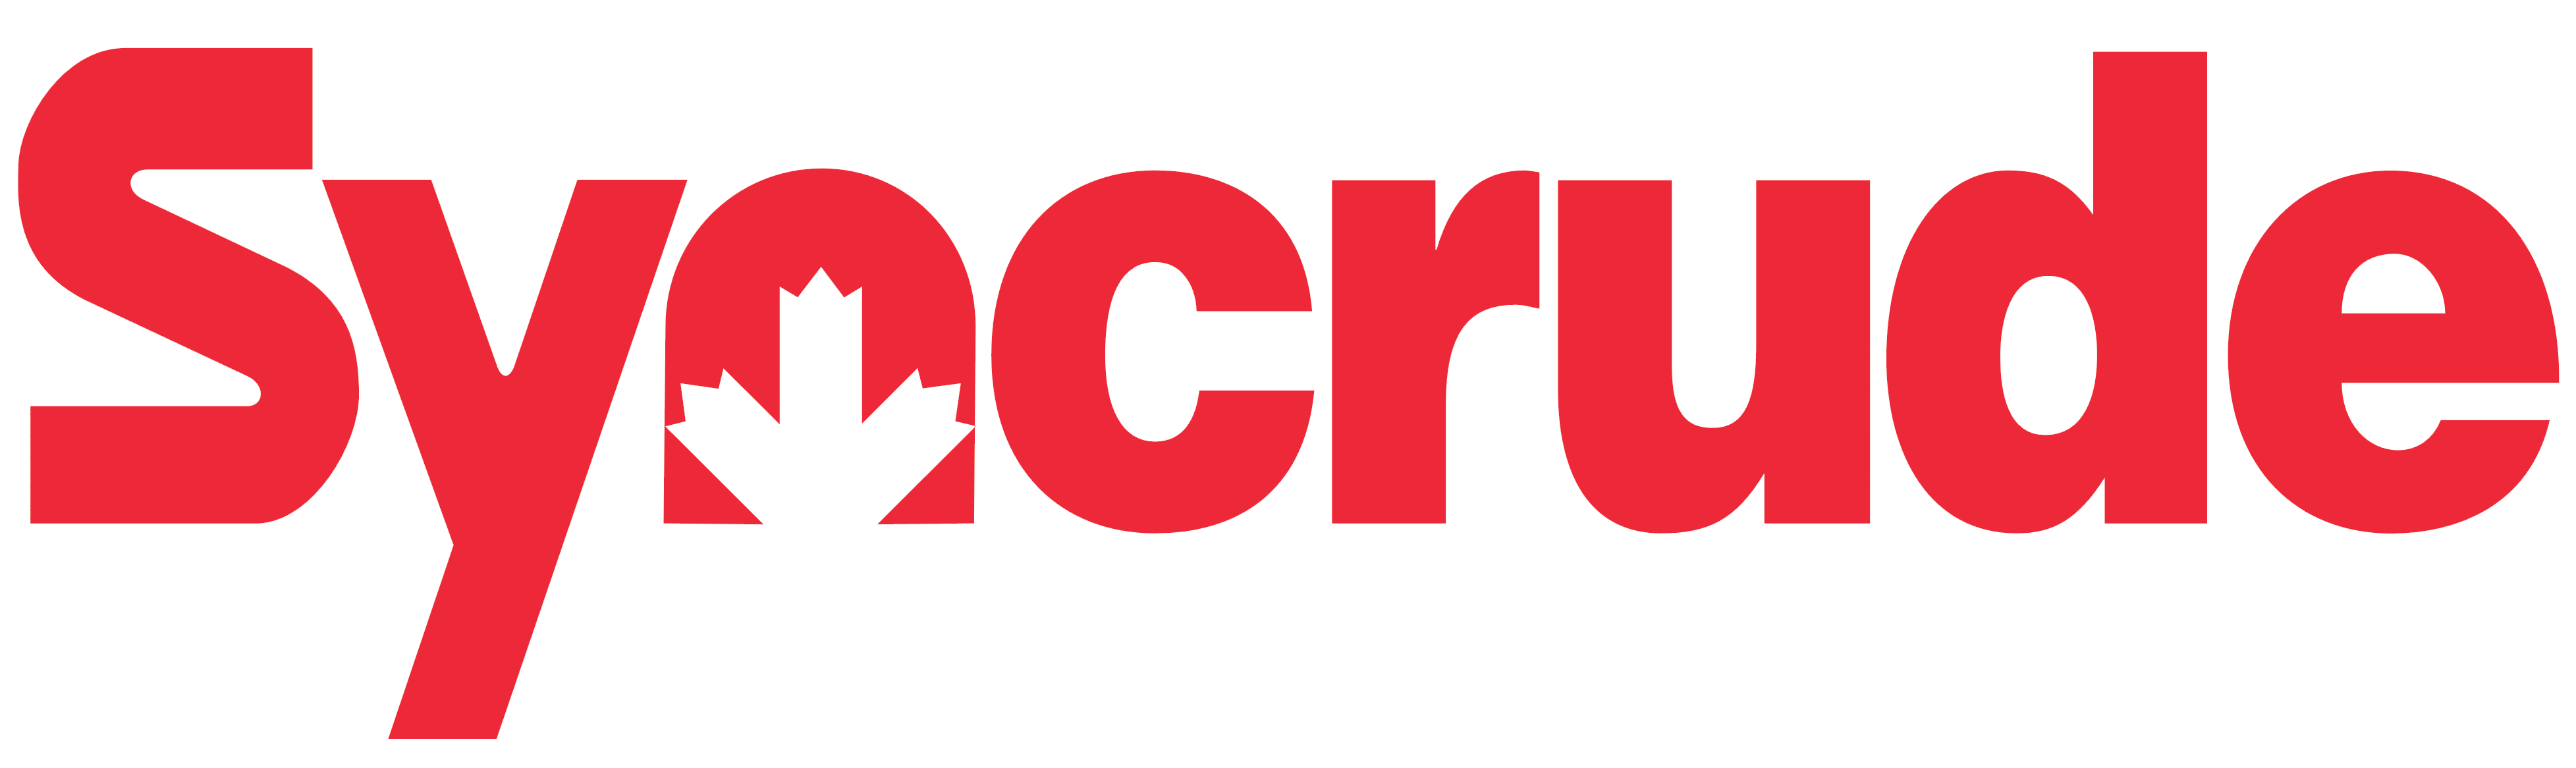 Syncrude Brand Logo